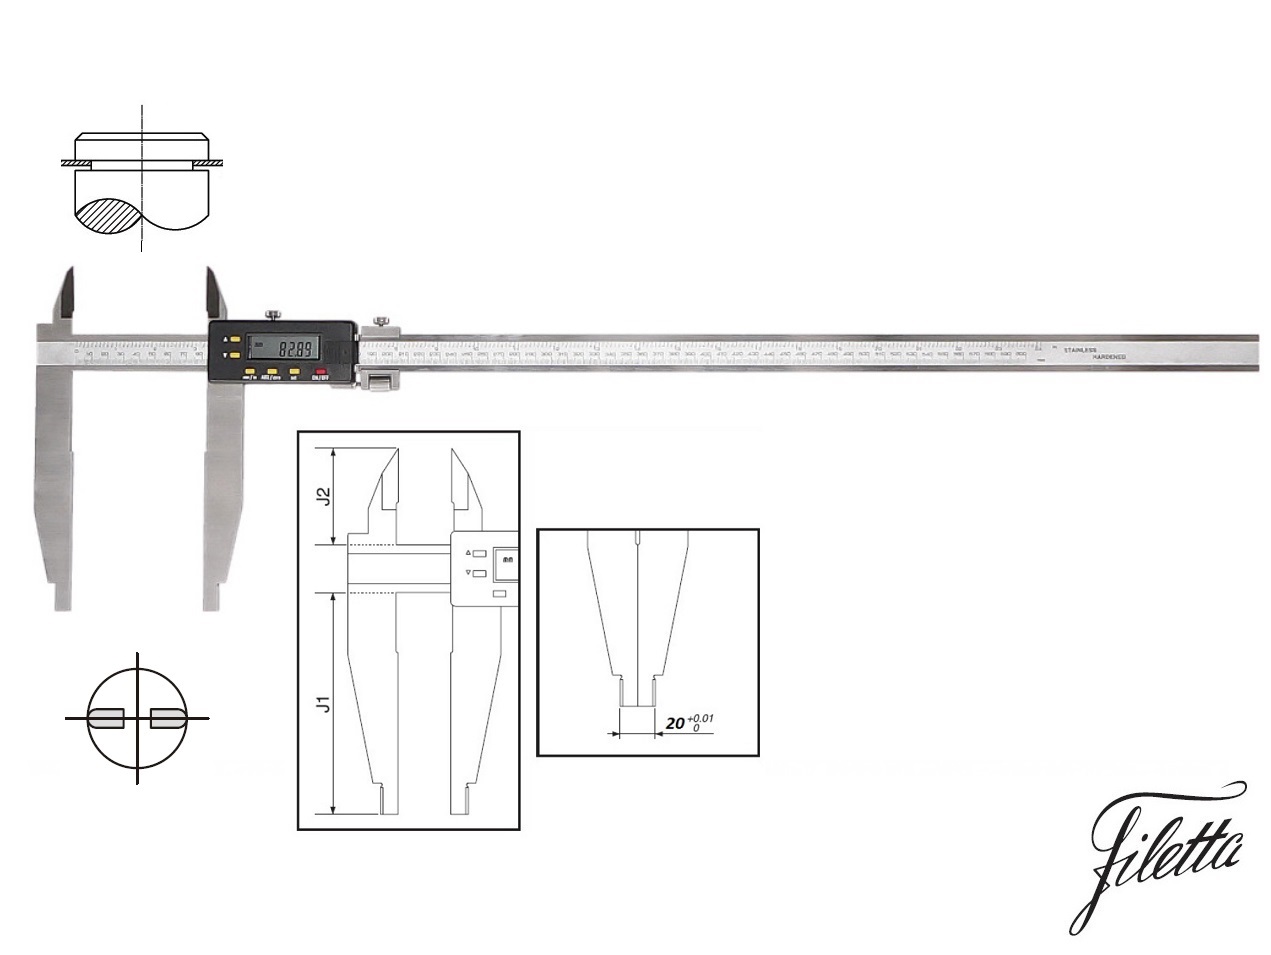 Digitální posuvné měřítko Filetta 0-2000/300 mm s měřicími nožíky pro vnější měření